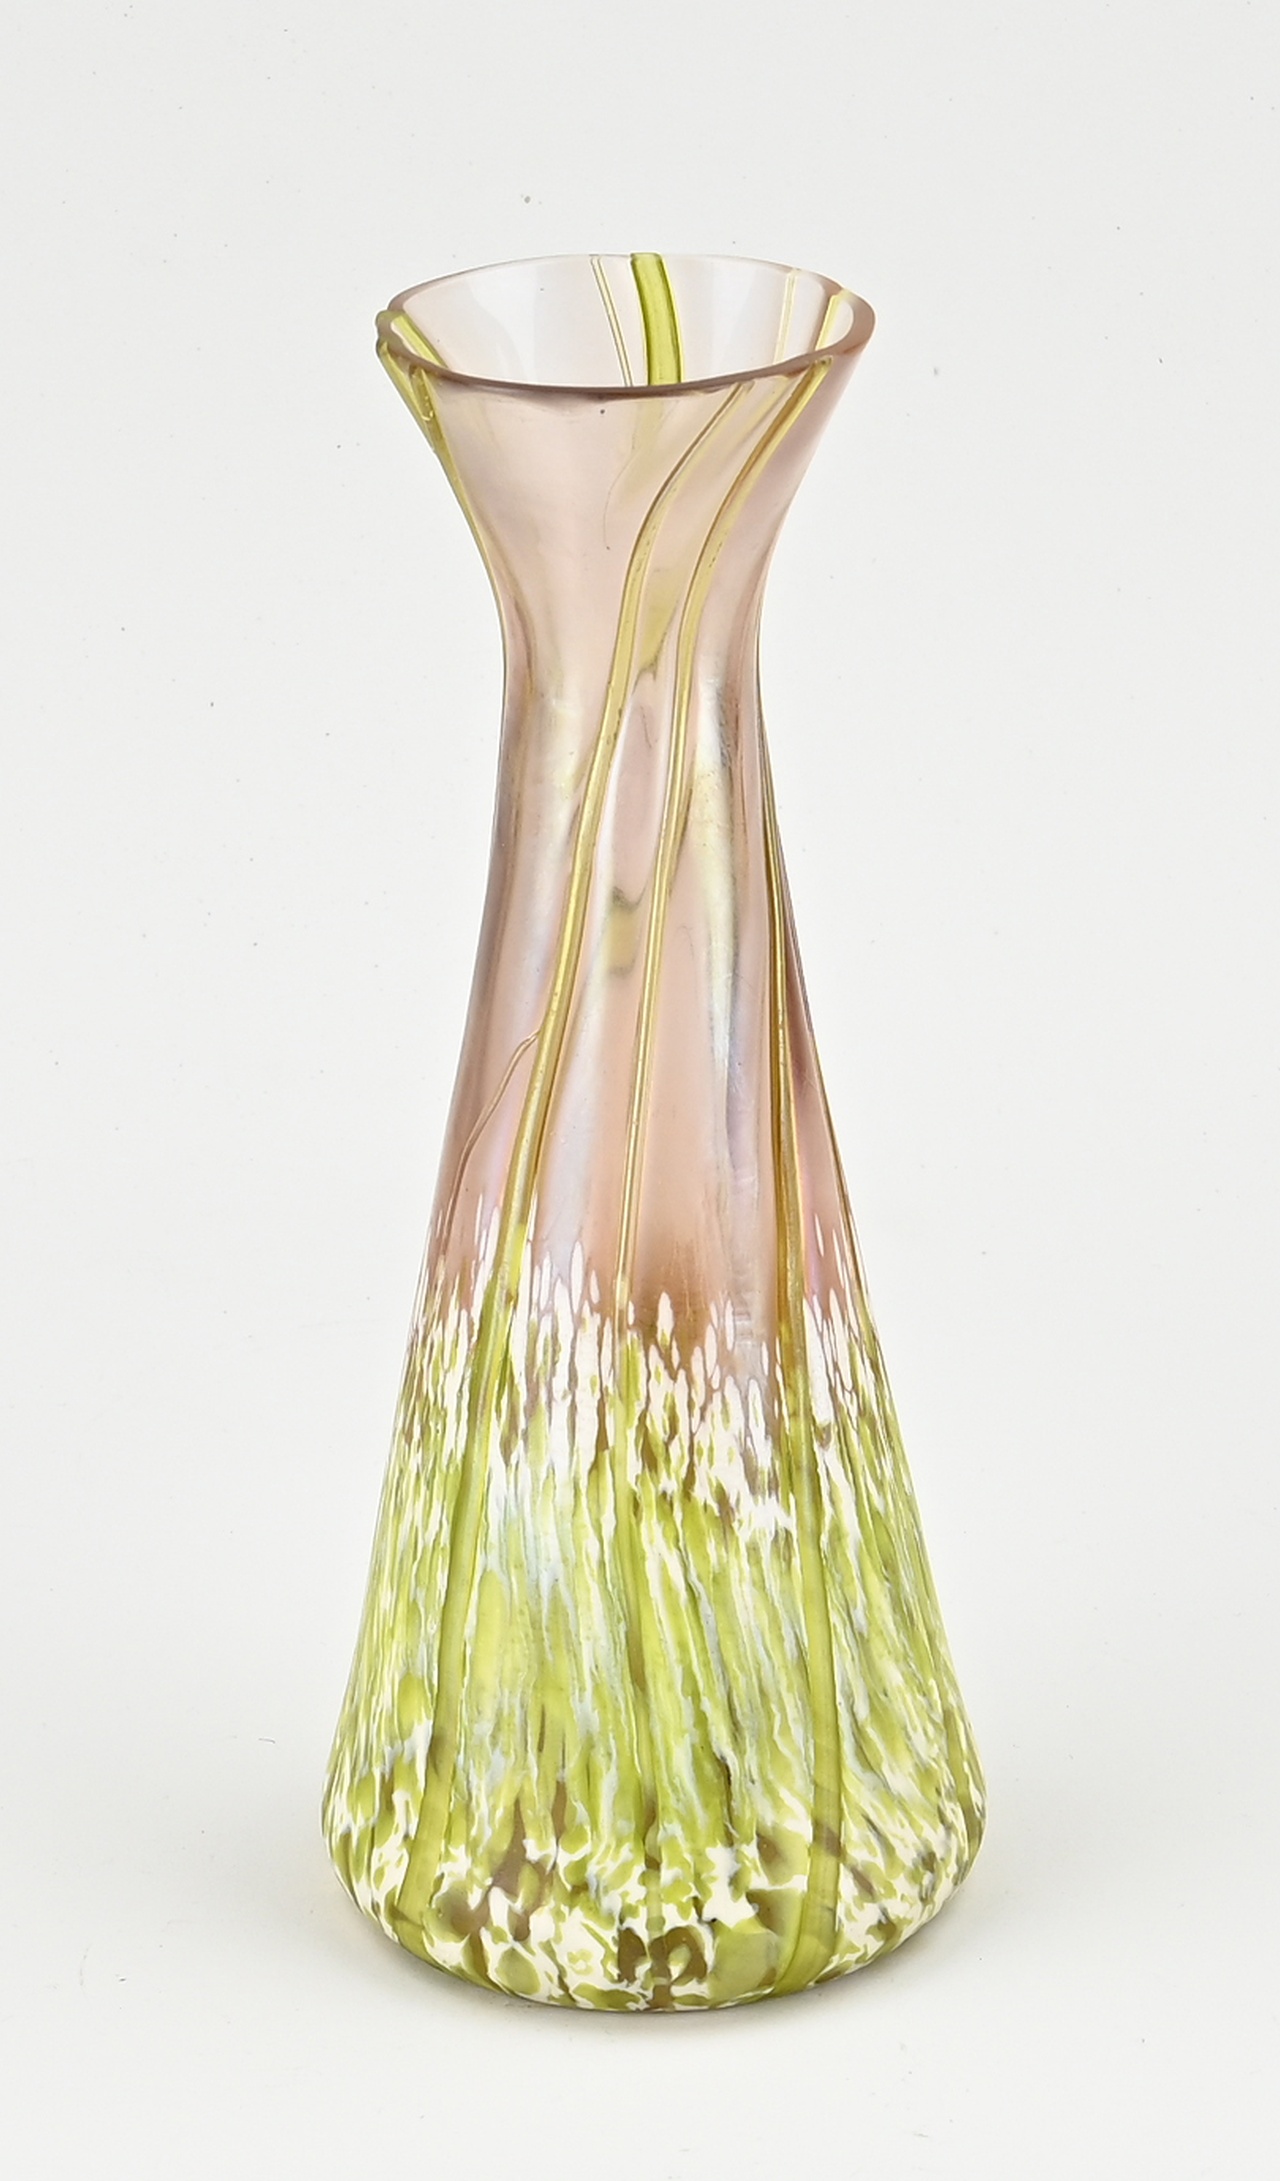 Iridescent vase, H 22 xm.